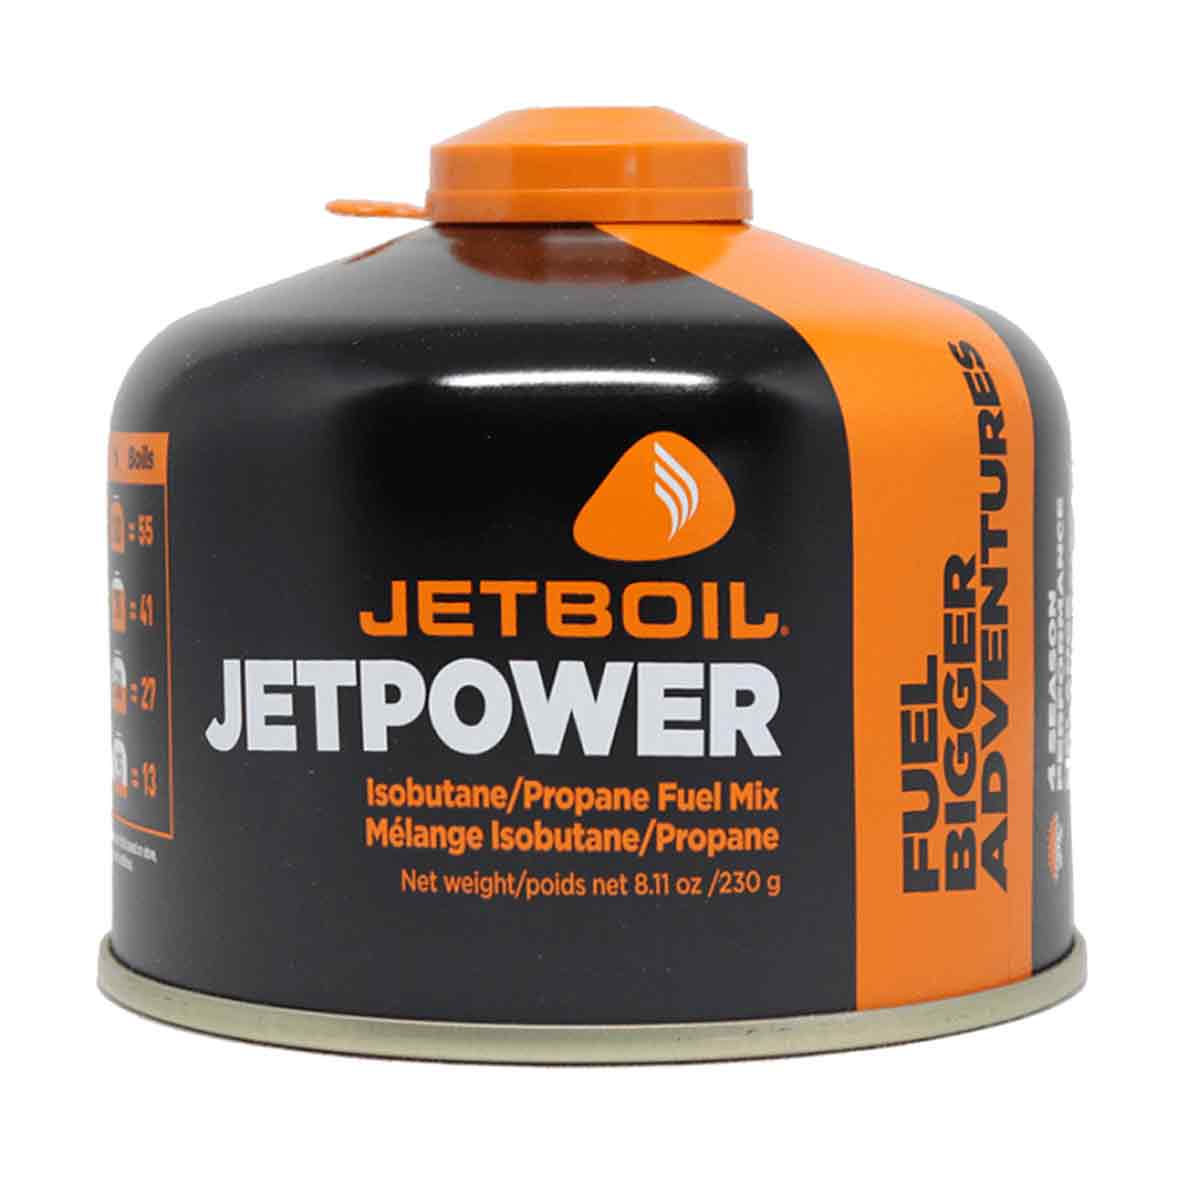 Jetboil Jetpower Gas Fuel Cartridge - John Bull Clothing